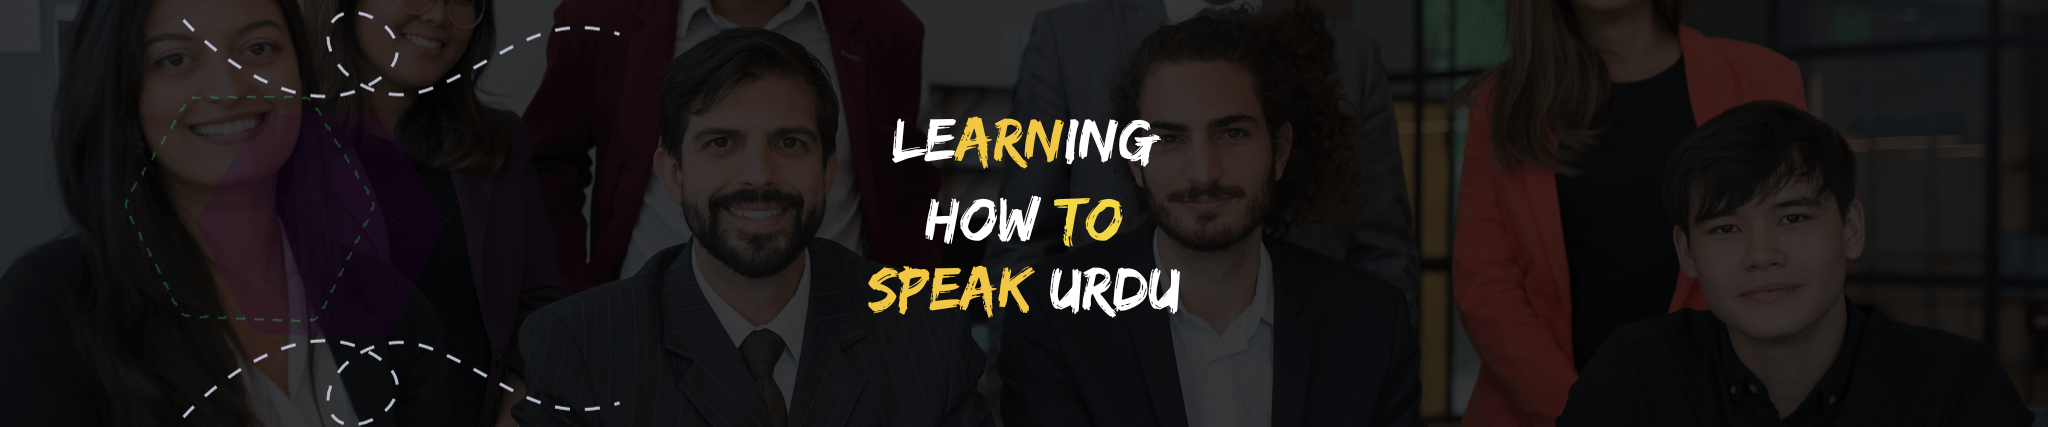 Learning how to speak Urdu